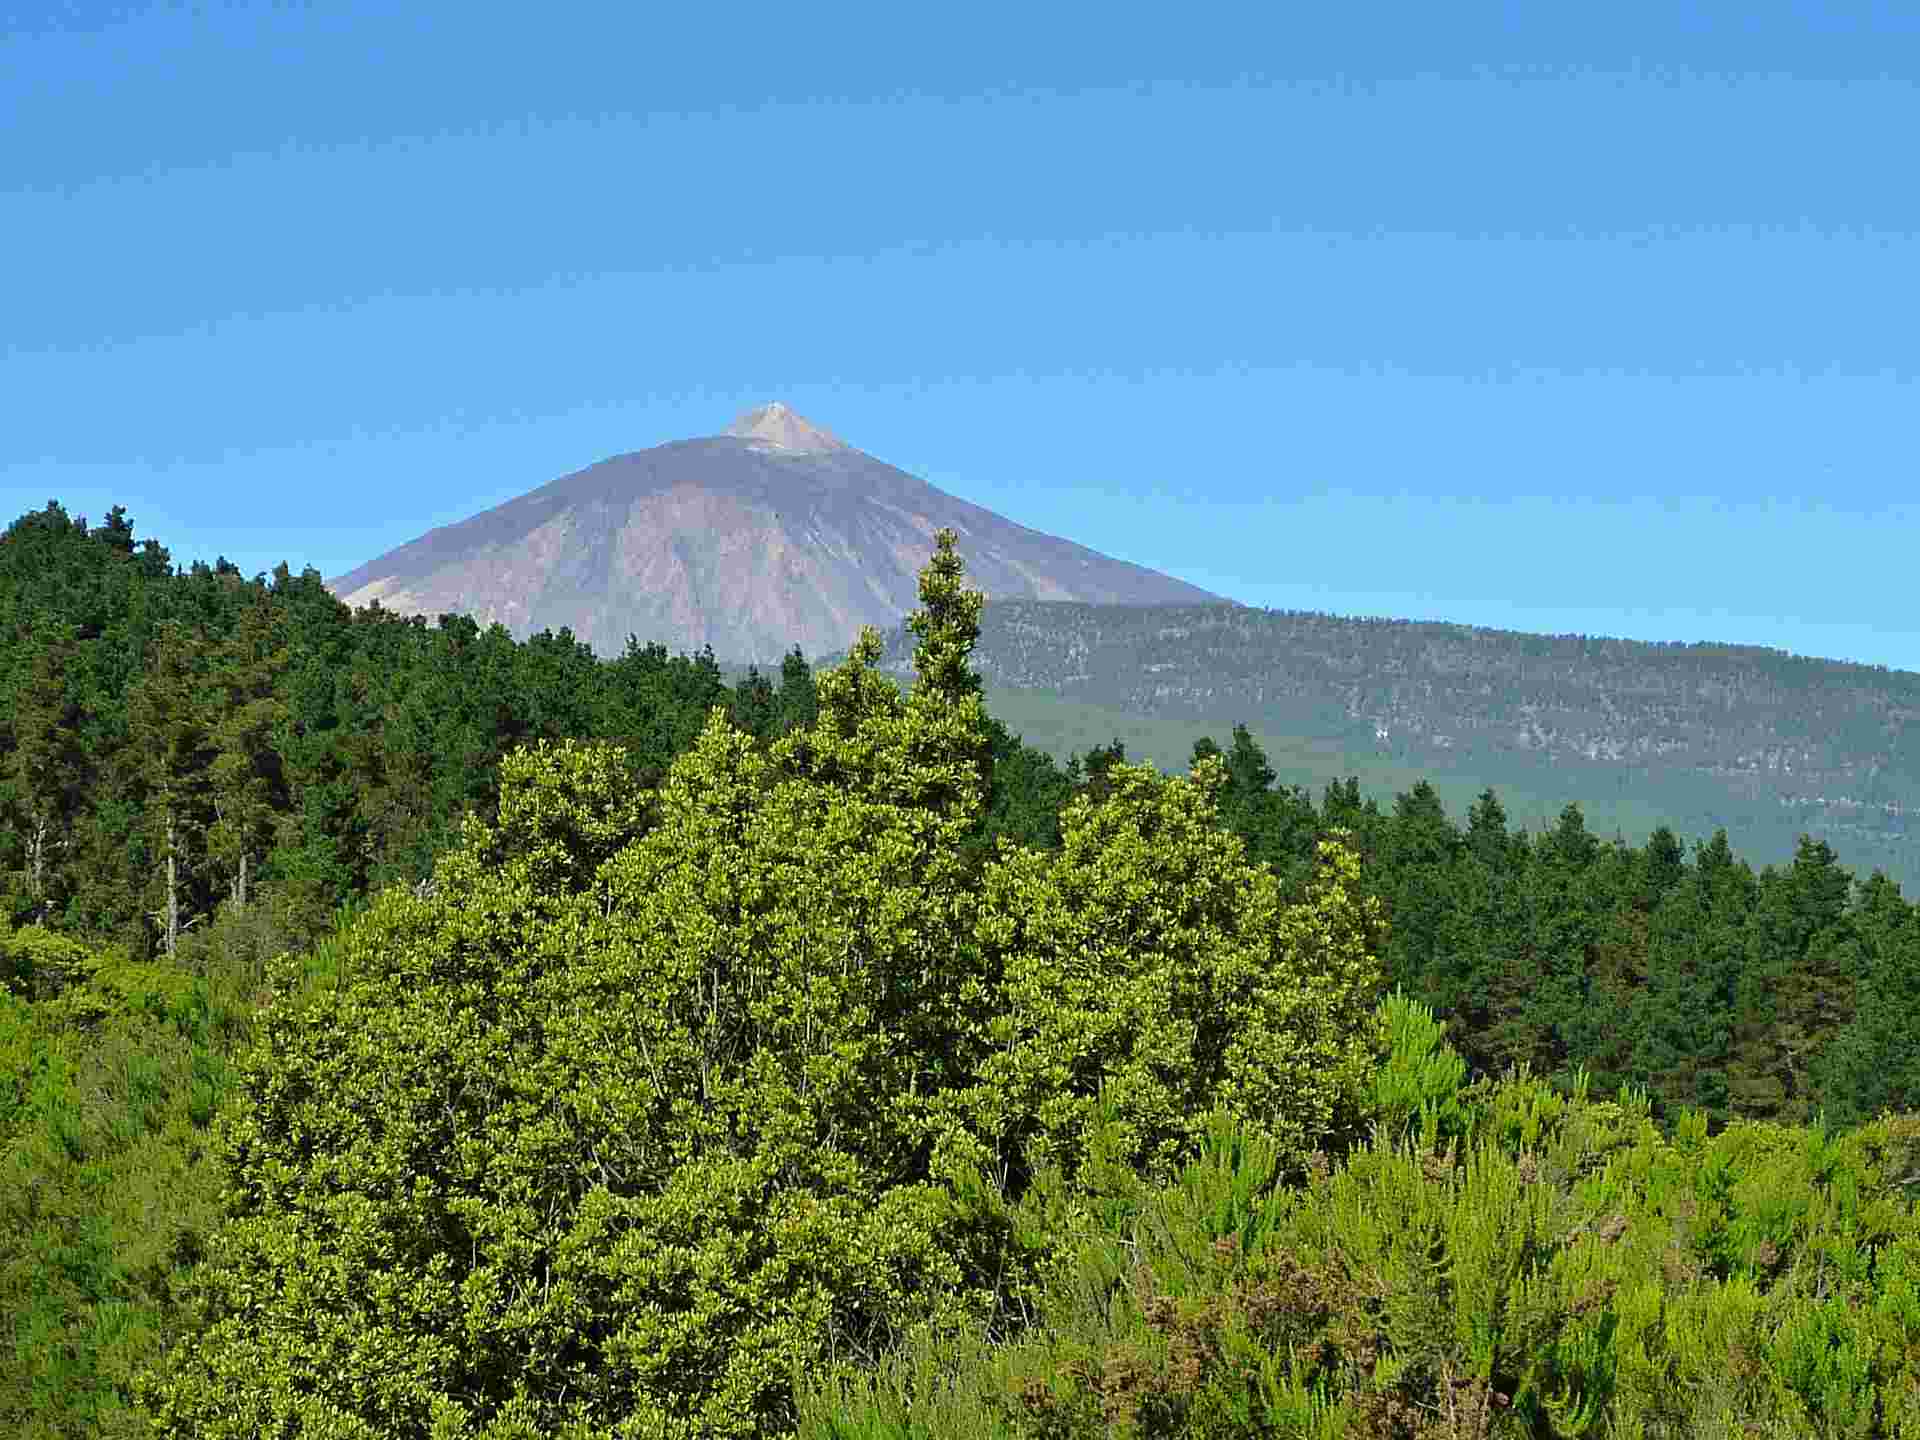 Tenerife. Immagine della corona forestale di Tenerife con l'edificio vulcanico del Teide sullo sfondo.